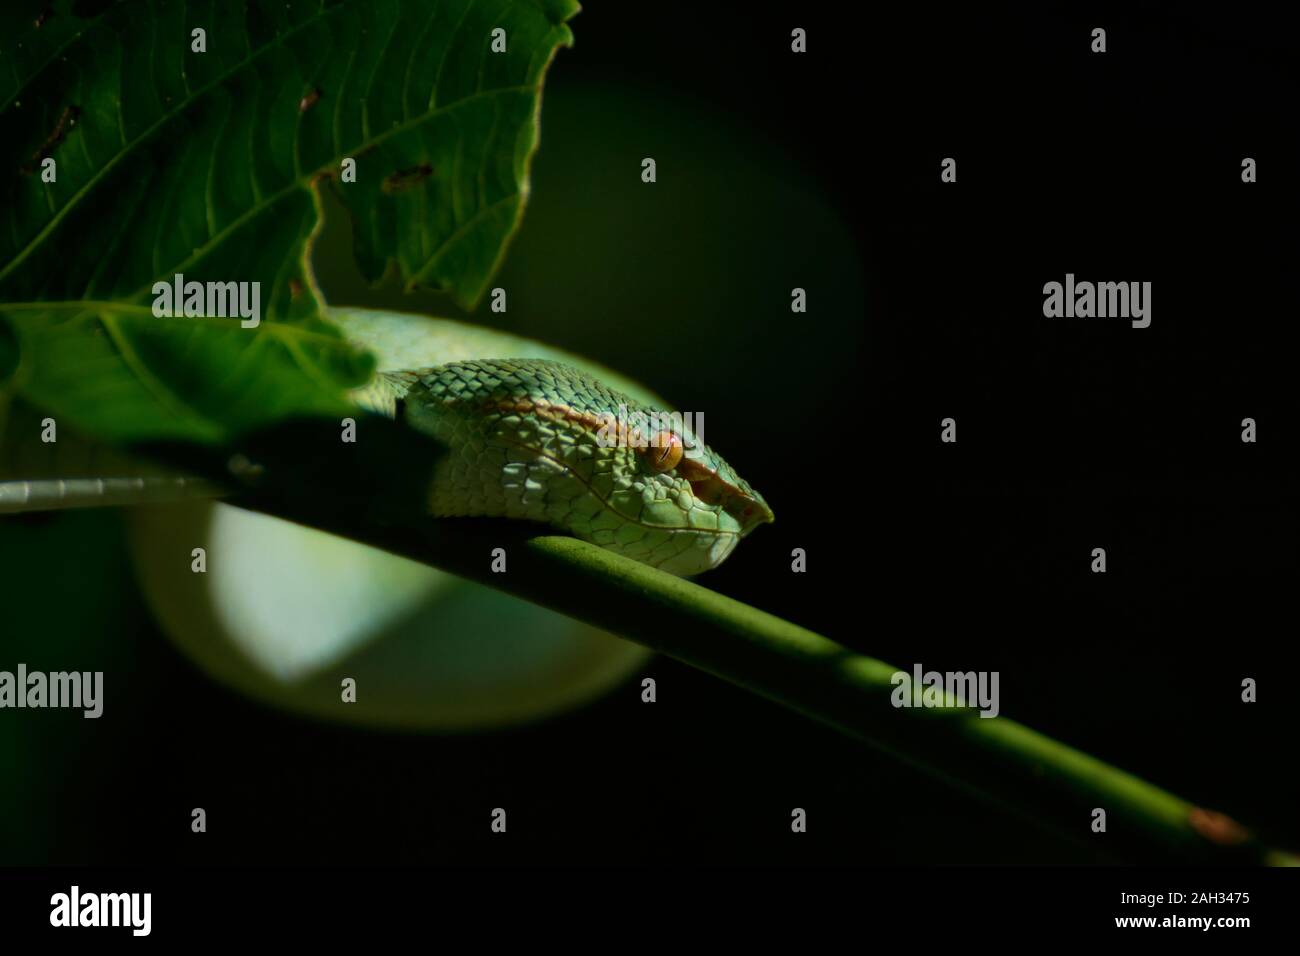 Bornesischen Gekielt green Pit Viper-Tropidolaemus subannulatus. Bako Nationalpark, Malaysia, Borneo. Während der Nacht. Nahaufnahme auf Baum. Hängende grüne Schlange. Stockfoto